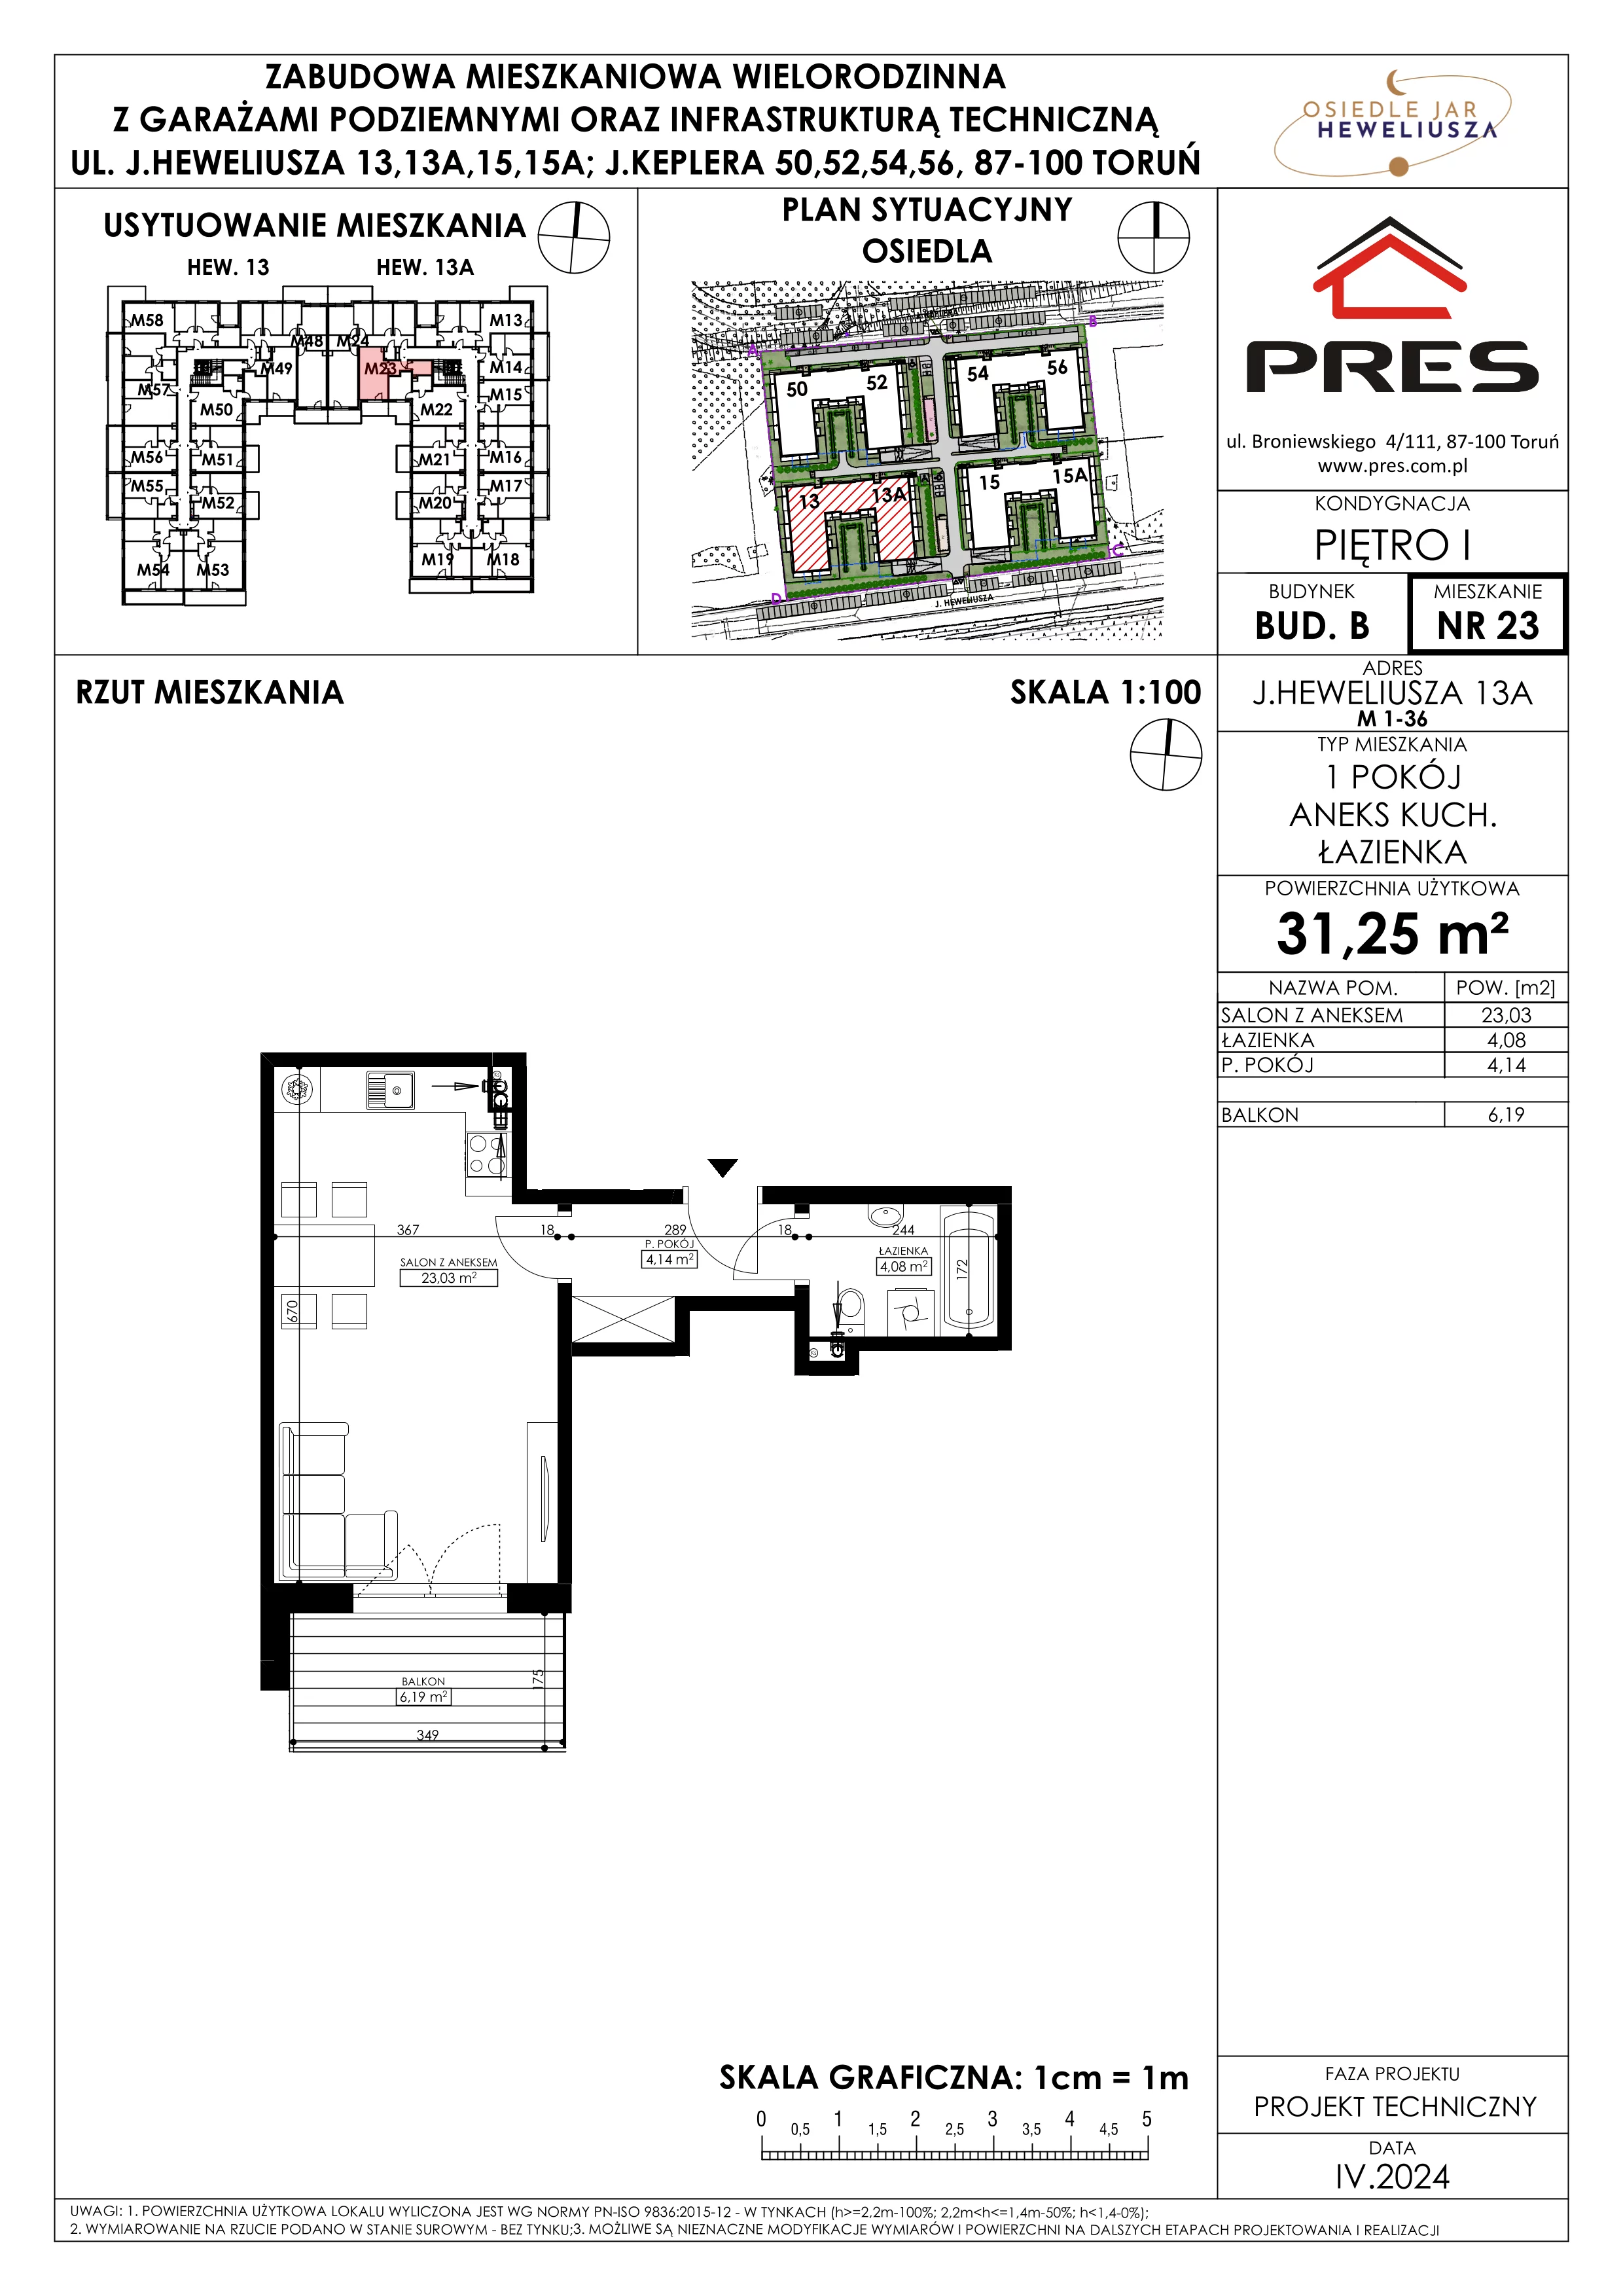 Mieszkanie 31,25 m², piętro 1, oferta nr 23, Osiedle JAR Heweliusza - Etap II, Toruń, Wrzosy, JAR, ul. Heweliusza 13-15A